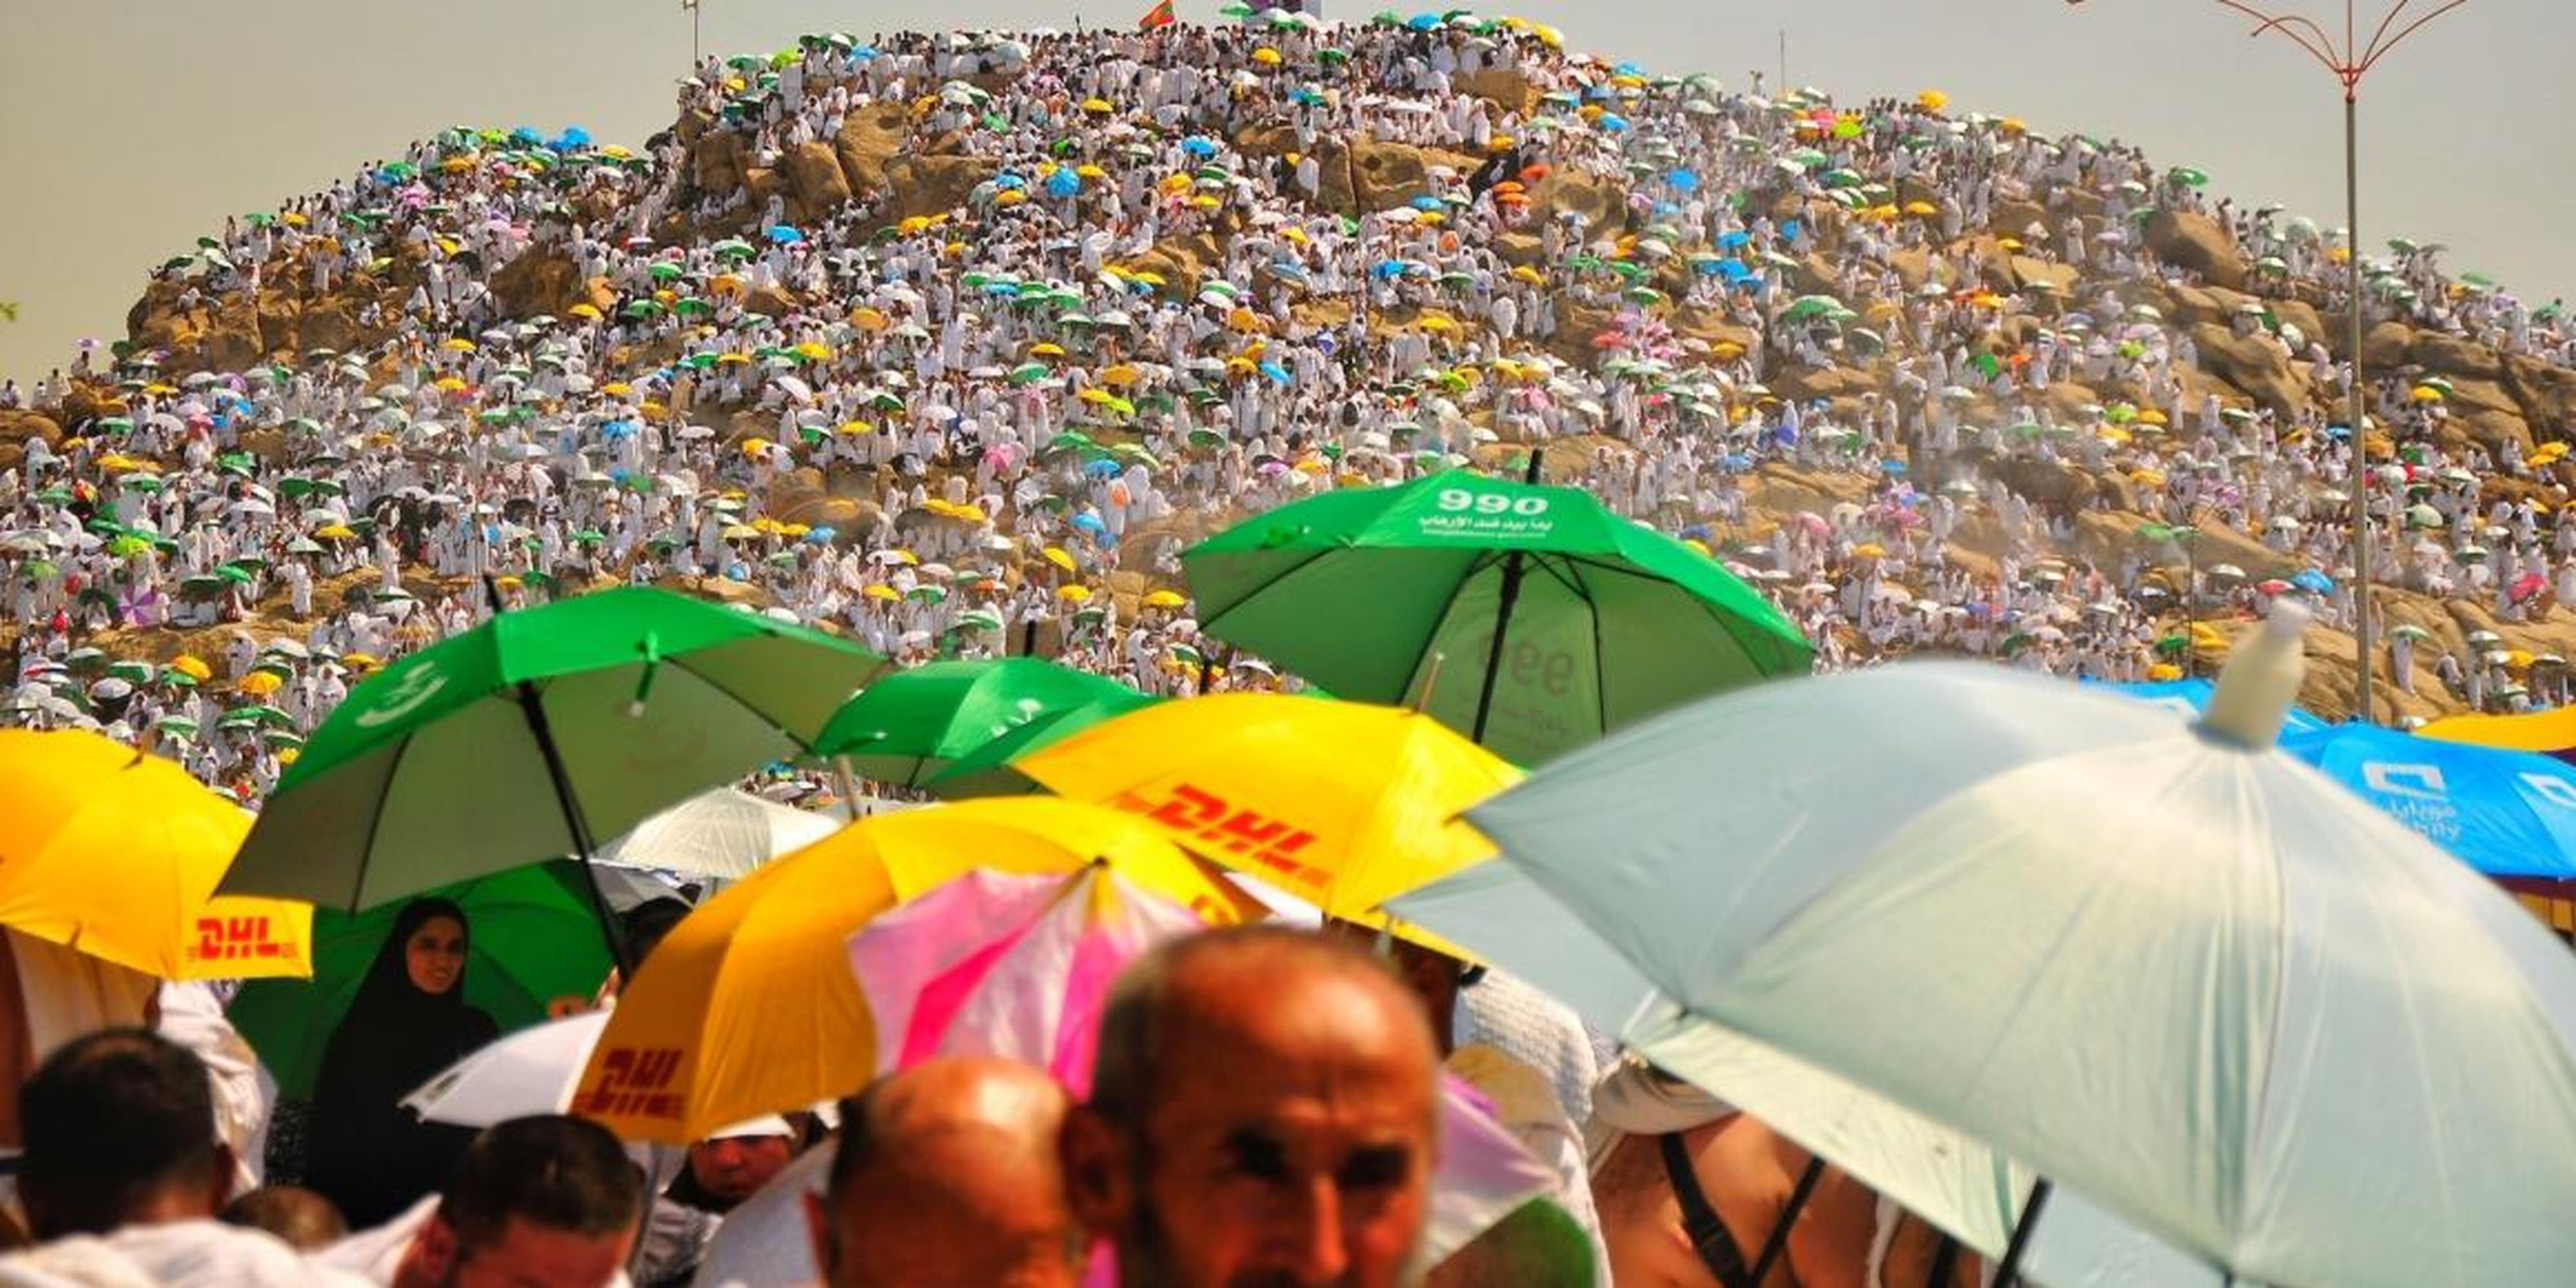 Peregrinos musulmanes llevando paraguas para protegerse del sol.